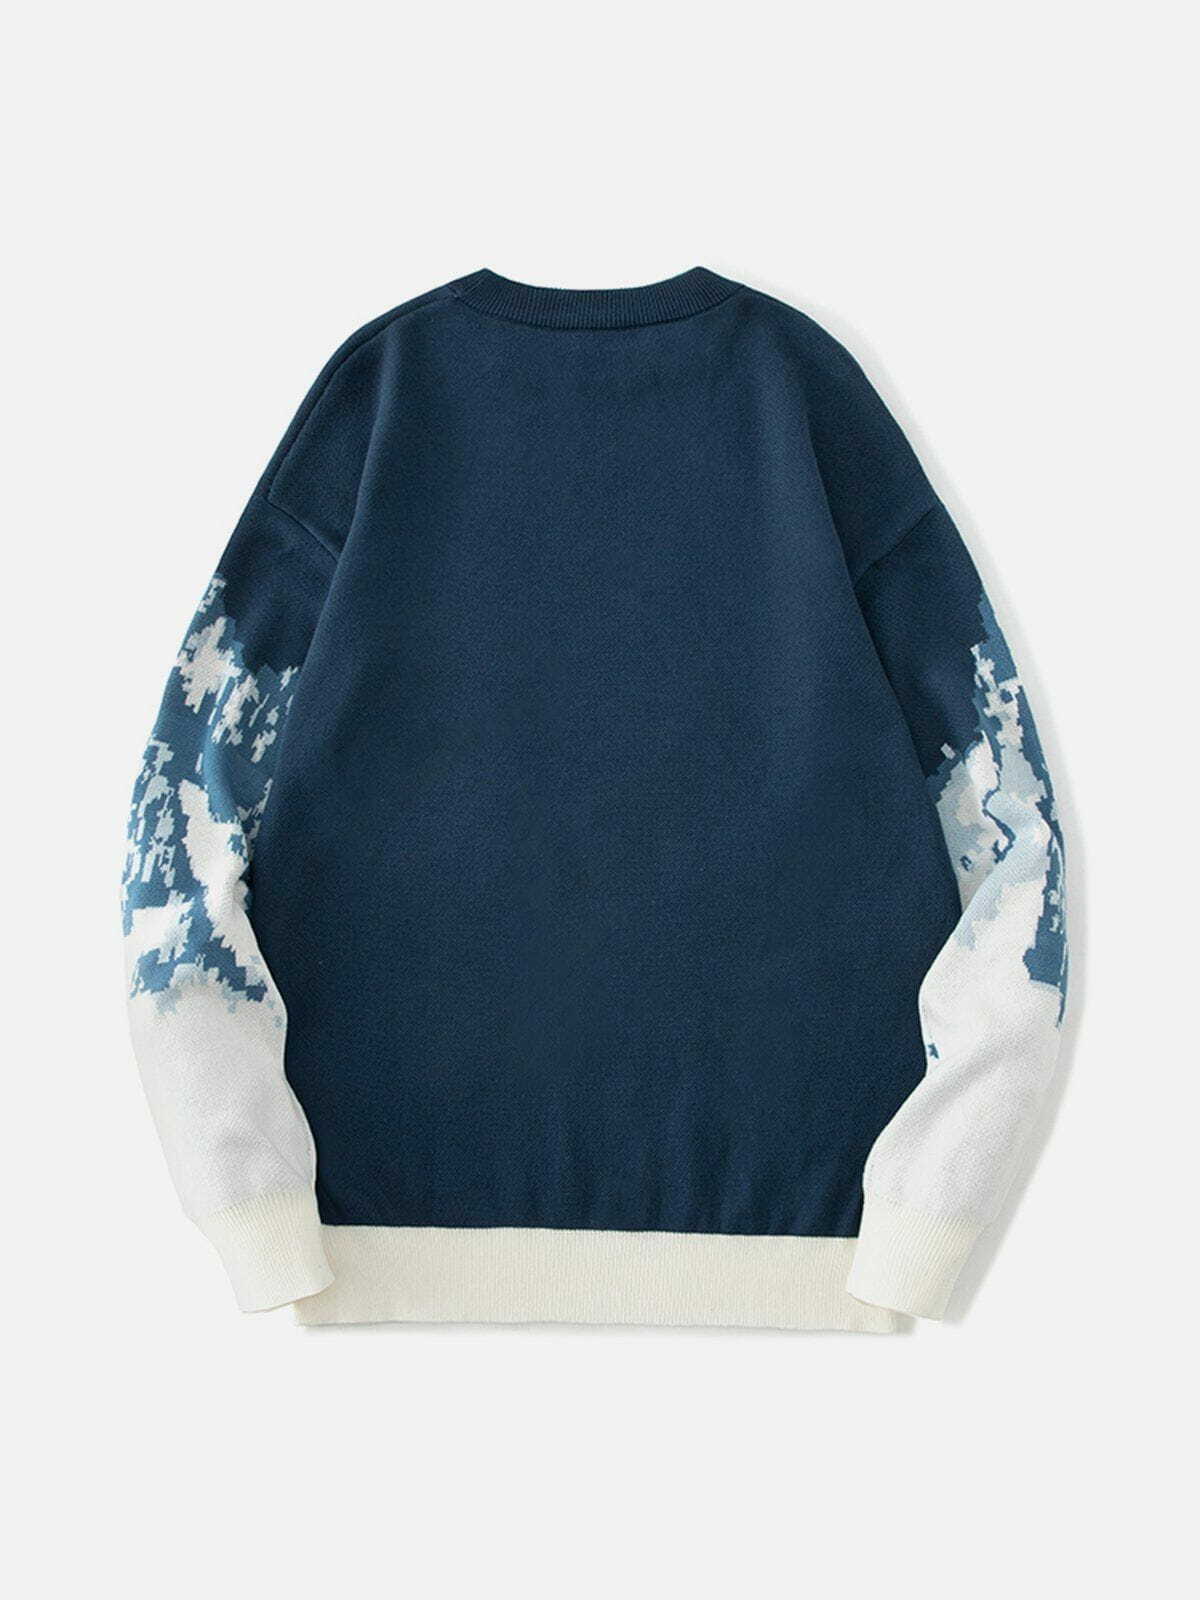 mountain landscape jacquard sweater edgy y2k streetwear 5174